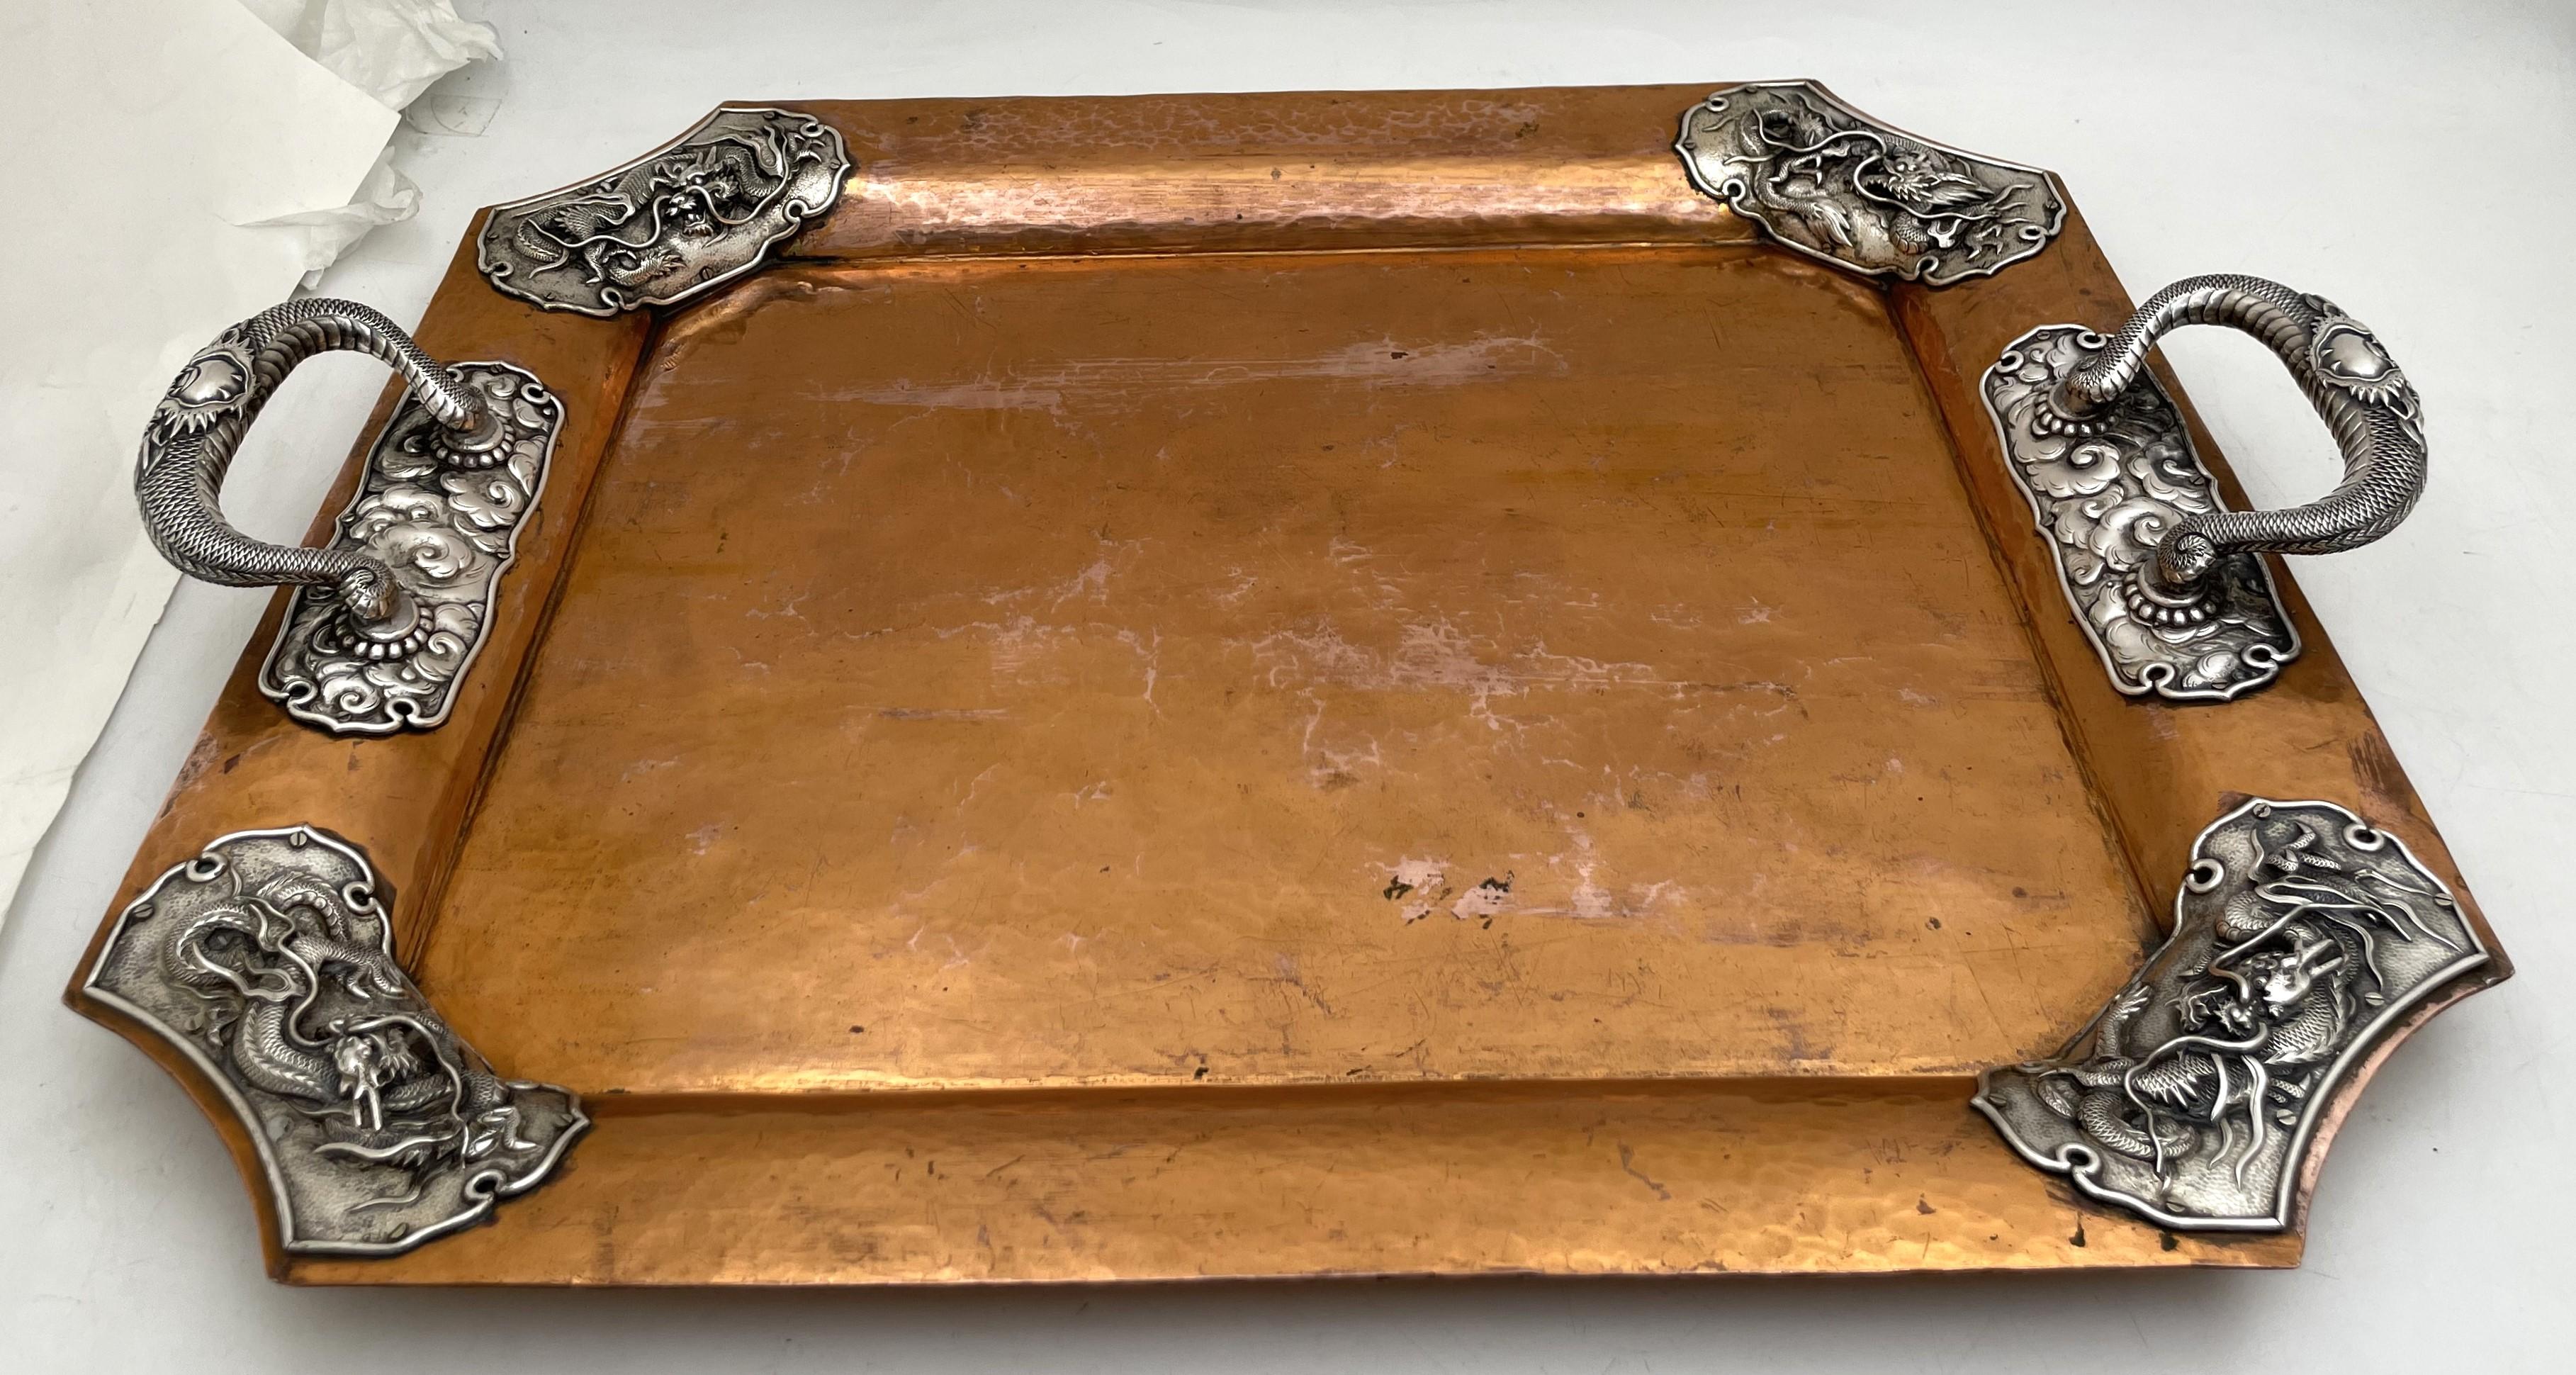 Japanisches Tablett aus Kupfer und Silber mit zwei Henkeln, aus dem späten 19. oder frühen 20. Jahrhundert, wunderschön verziert mit Drachenmotiven in Relief auf dem Rand und den Henkeln. Er misst 20 1/2'' von Griff zu Griff (die Innenlänge beträgt